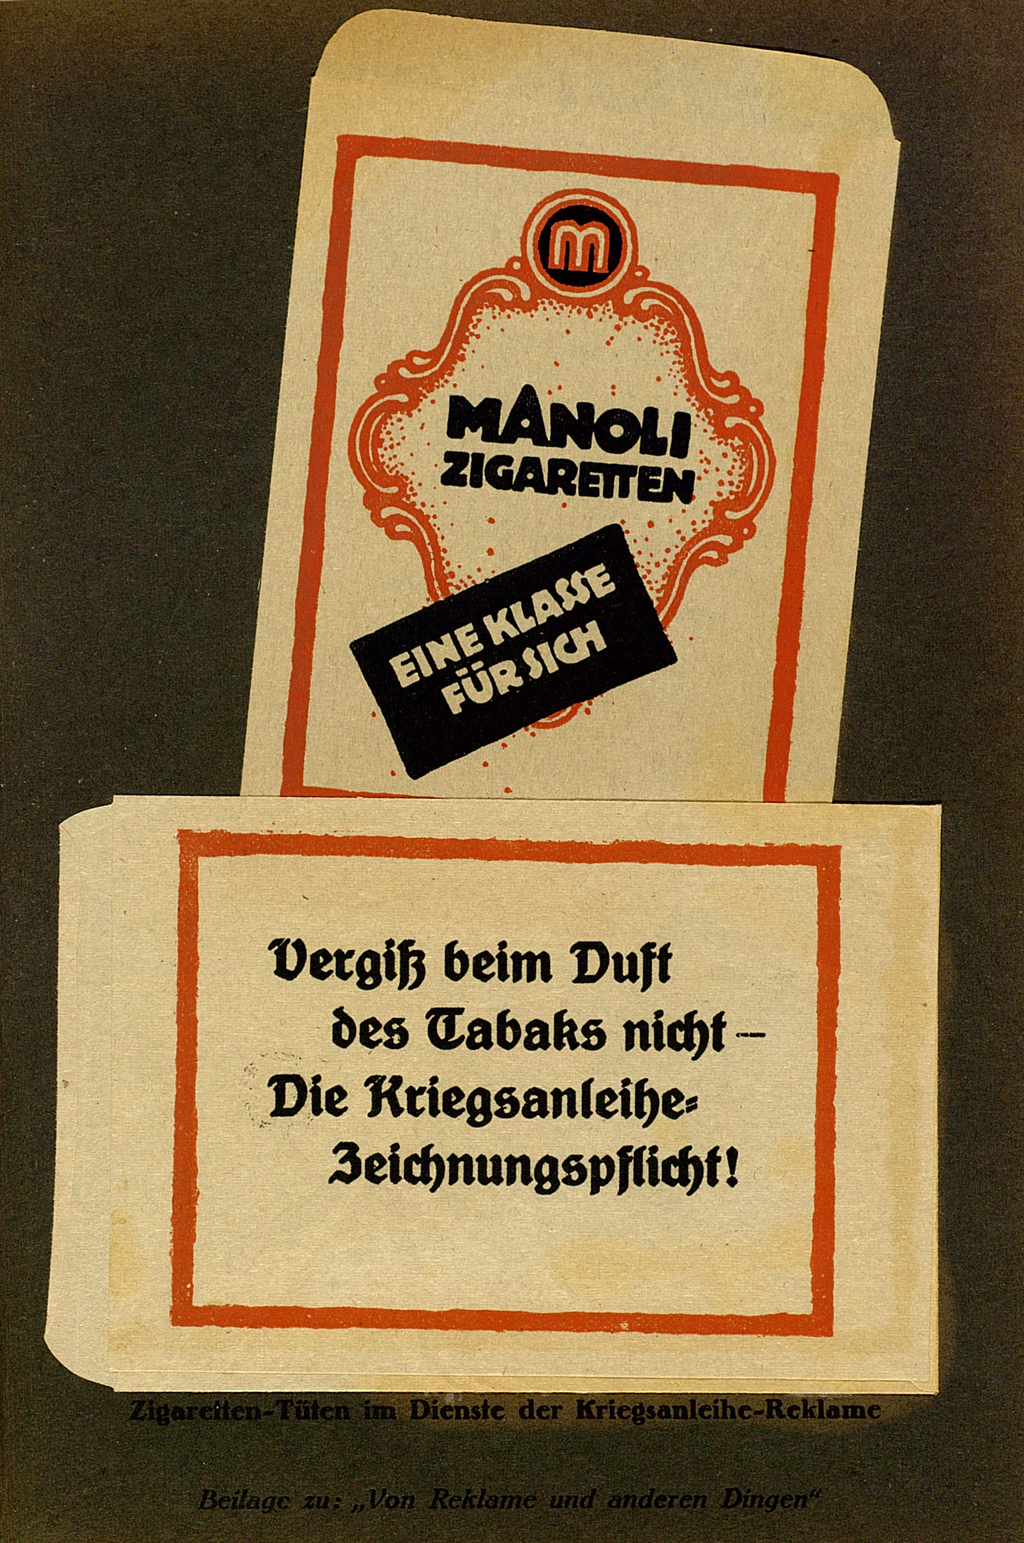 Zu sehen ist eine Werbeanzeige mit dem Text: "Manoli Zigaretten. Eine Klasse für sich. Vergiß beim Duft des Tabaks nicht - Die Kriegsanleihe Zeichnungspflicht!".